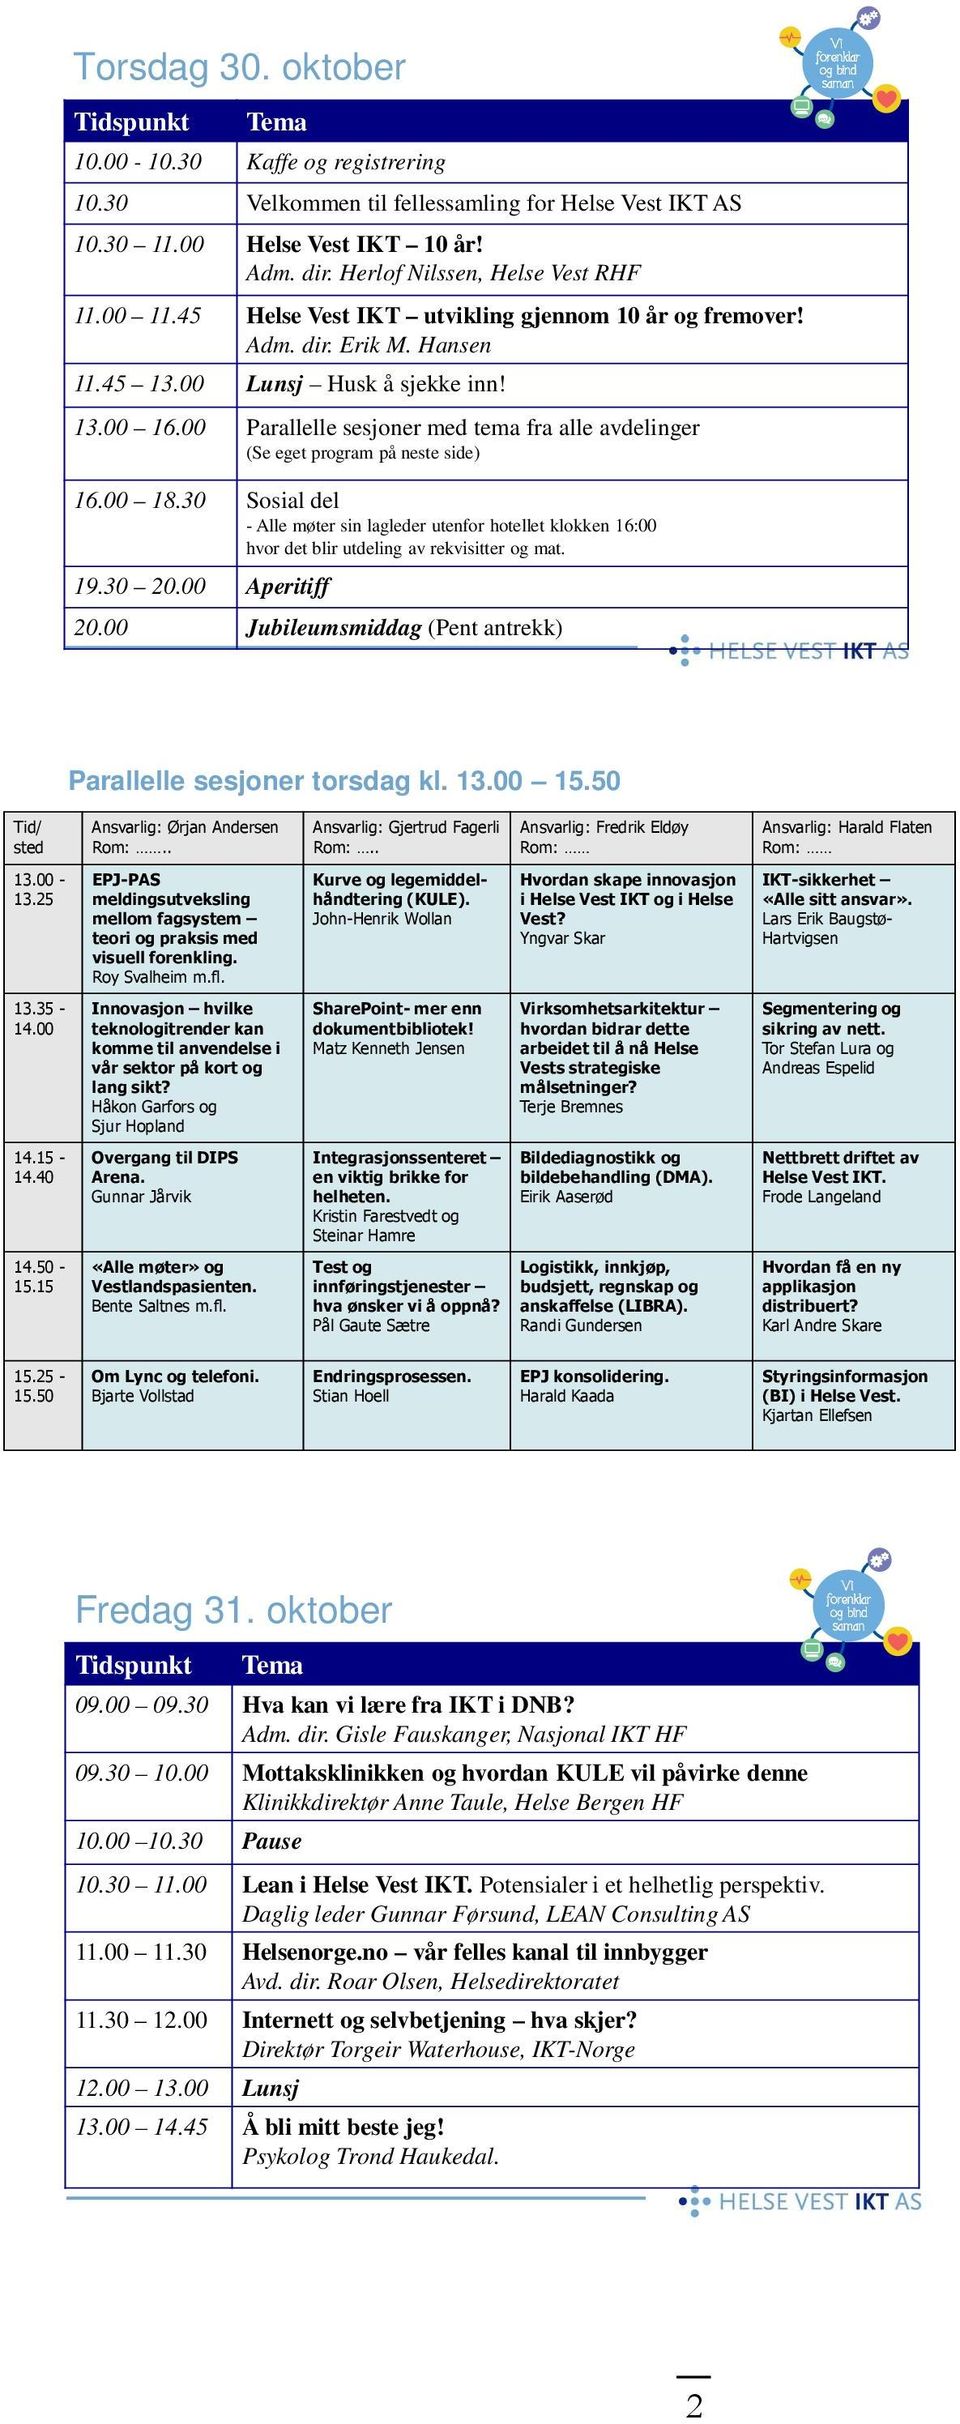 00 Parallelle sesjoner med tema fra alle avdelinger (Se eget program på neste side) 16.00 18.